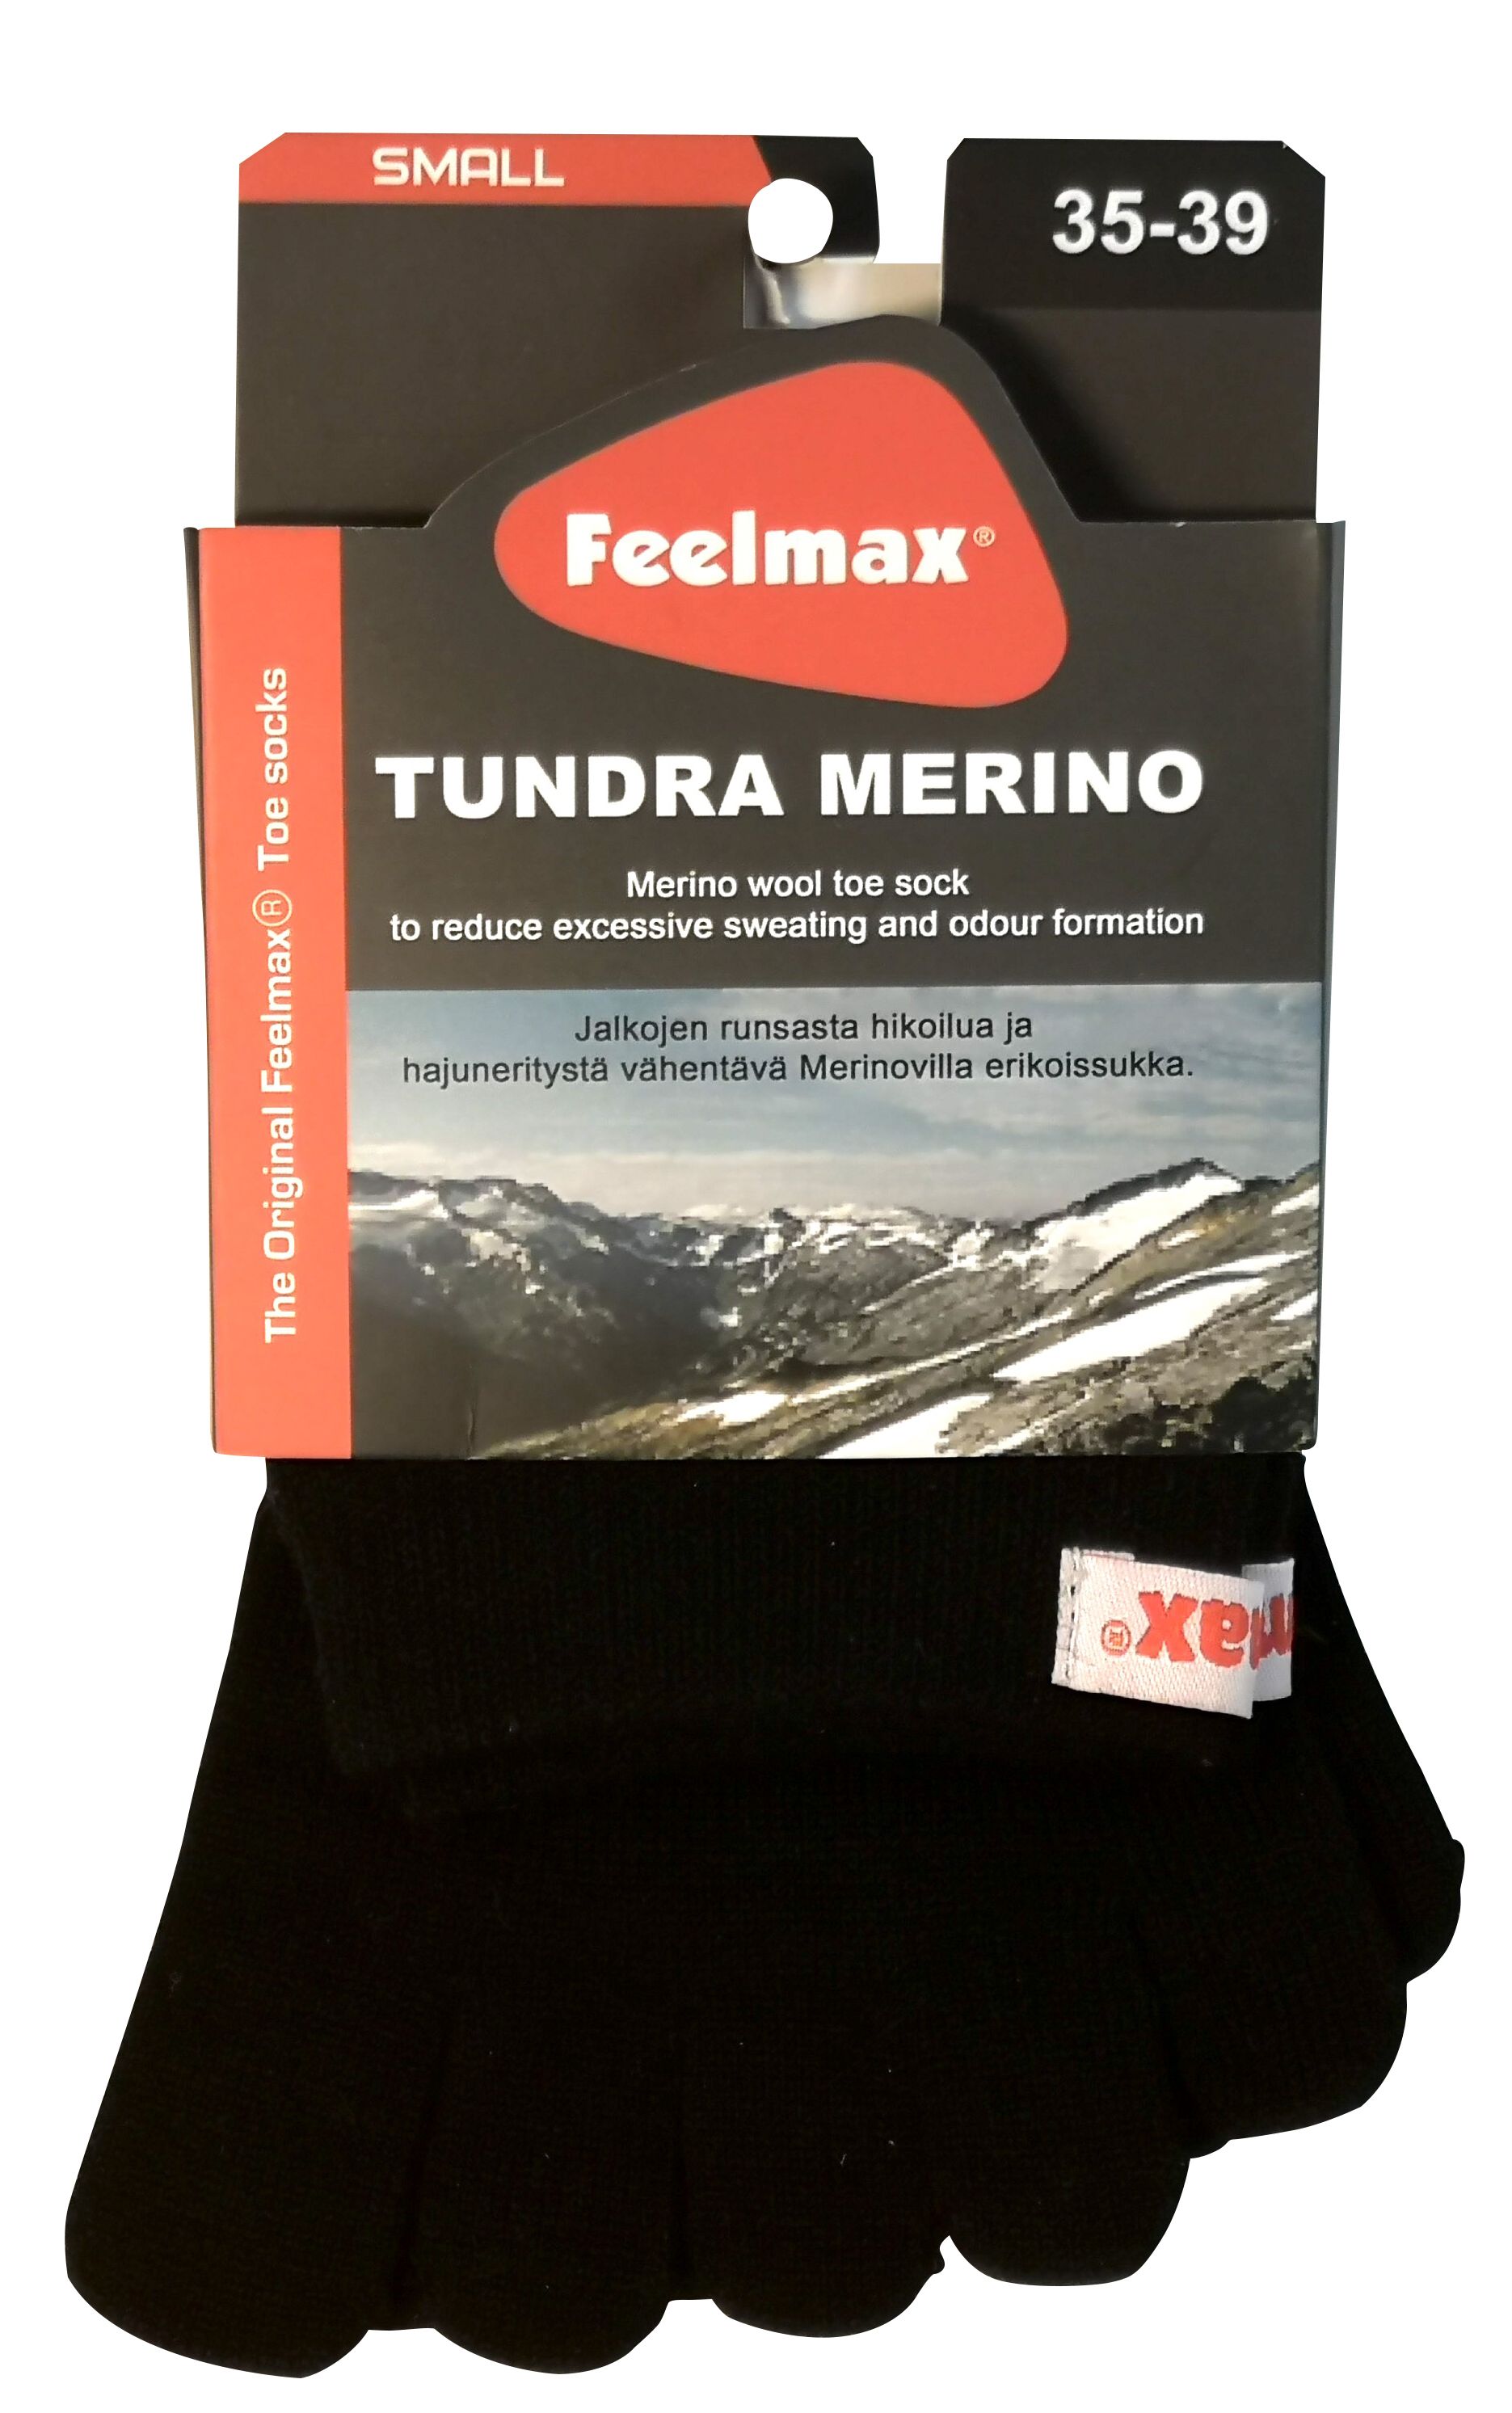 Feelmax Tundra Merino varvassukat